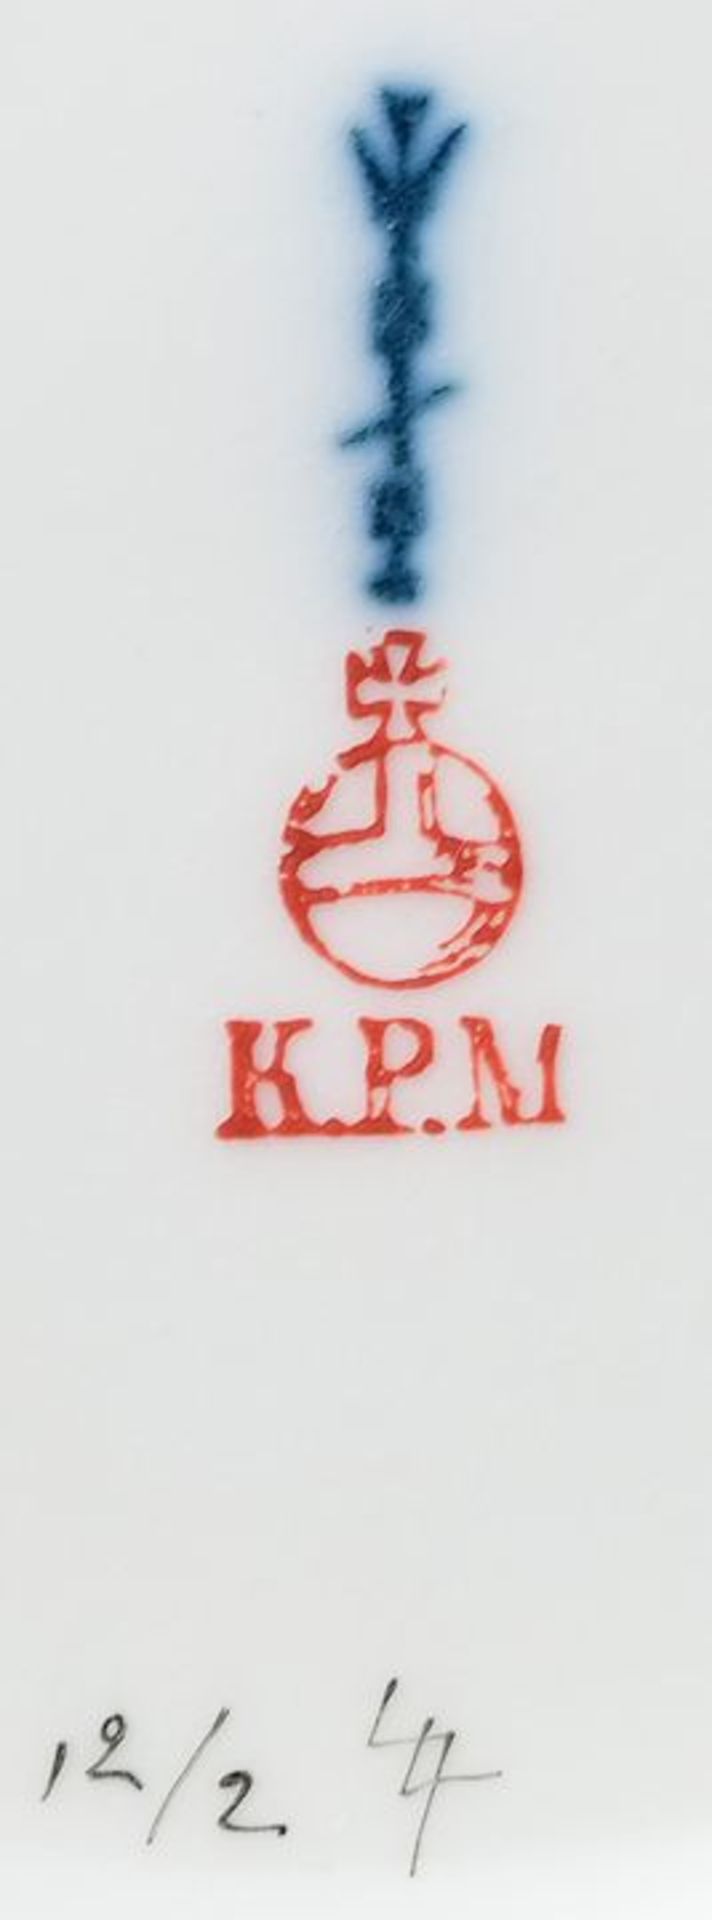 KPM, Teller/ plate - Image 2 of 3